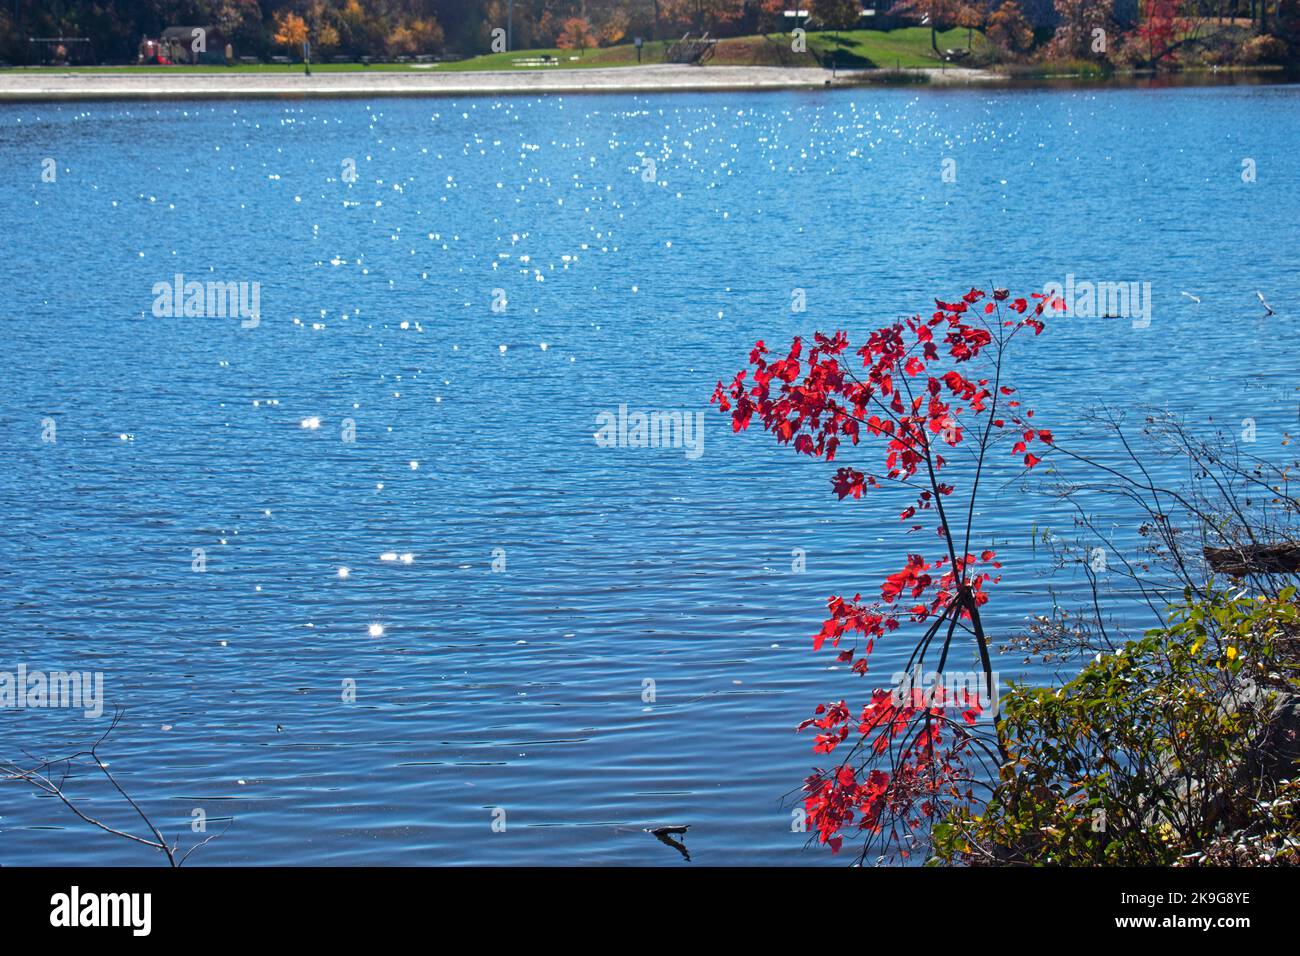 Le lac Marcia du parc national de High point du New Jersey, lors d'une journée d'automne ensoleillée, entouré d'une végétation luxuriante -06 Banque D'Images